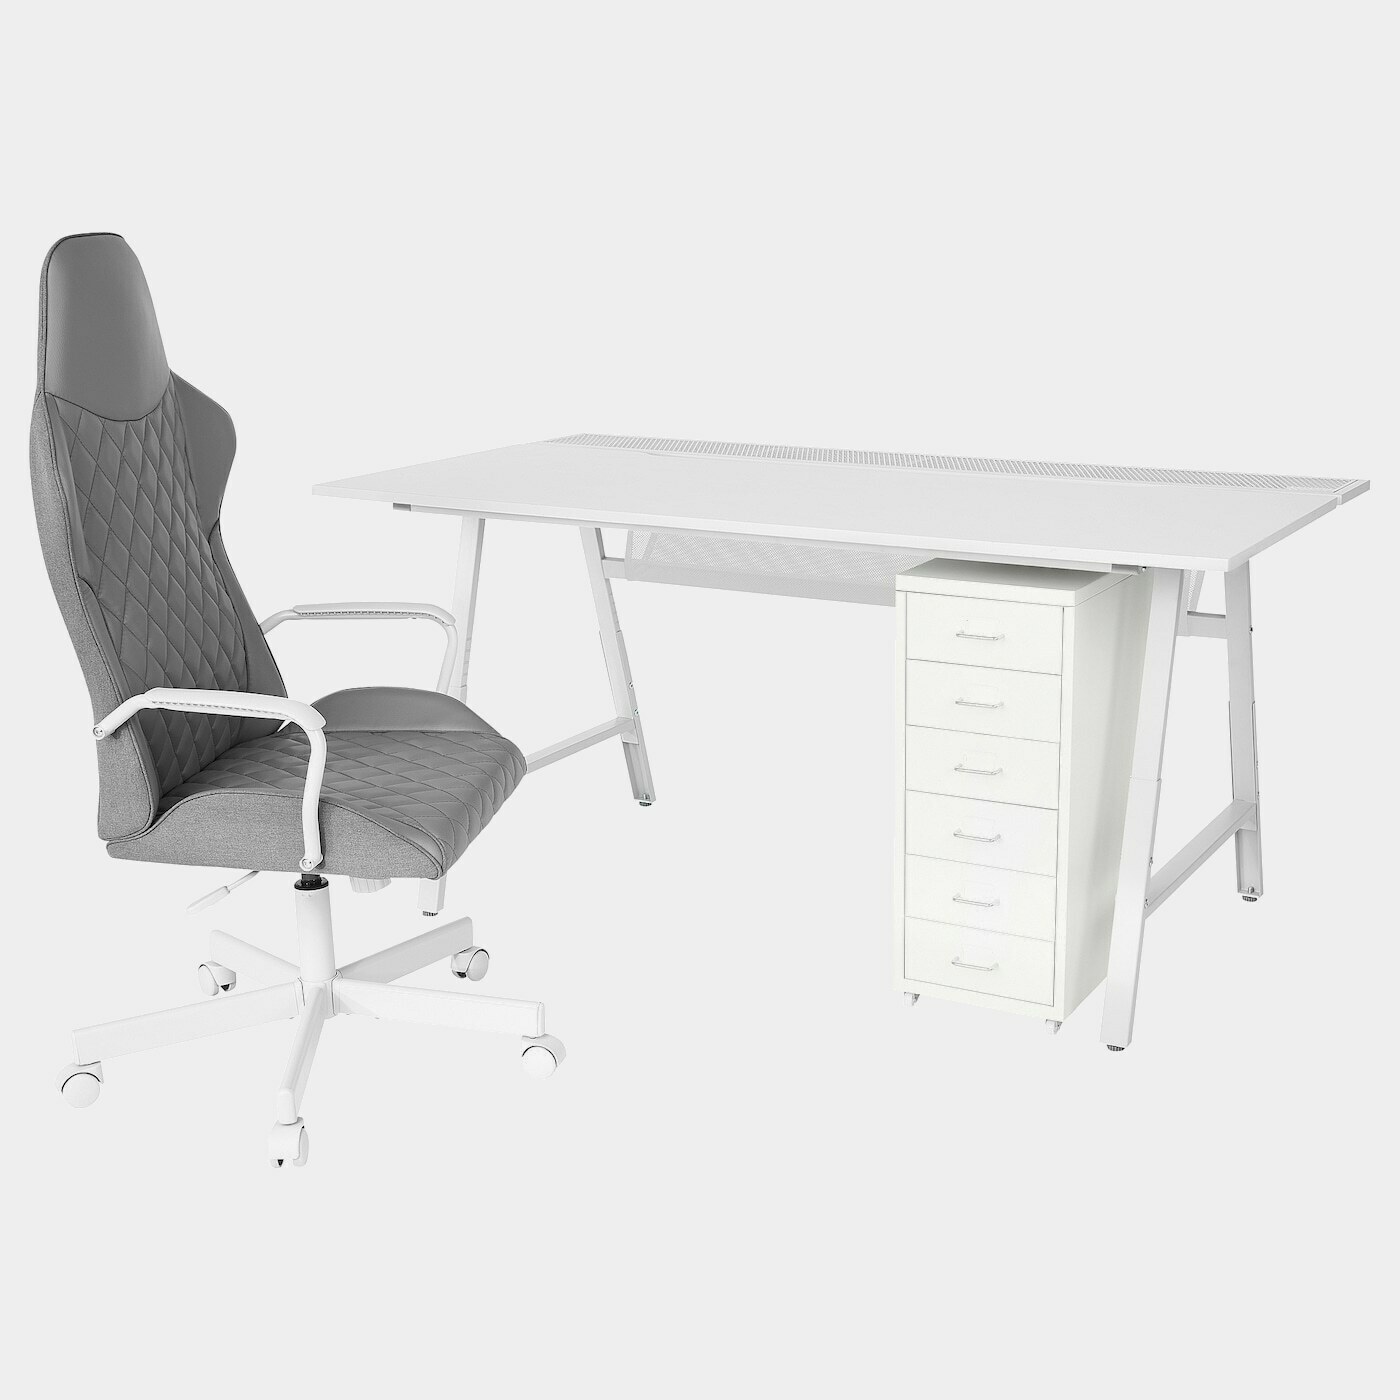 UTESPELARE / HELMER Schreibtisch, Stuhl + Schubladenel  -  - Möbel Ideen für dein Zuhause von Home Trends. Möbel Trends von Social Media Influencer für dein Skandi Zuhause.